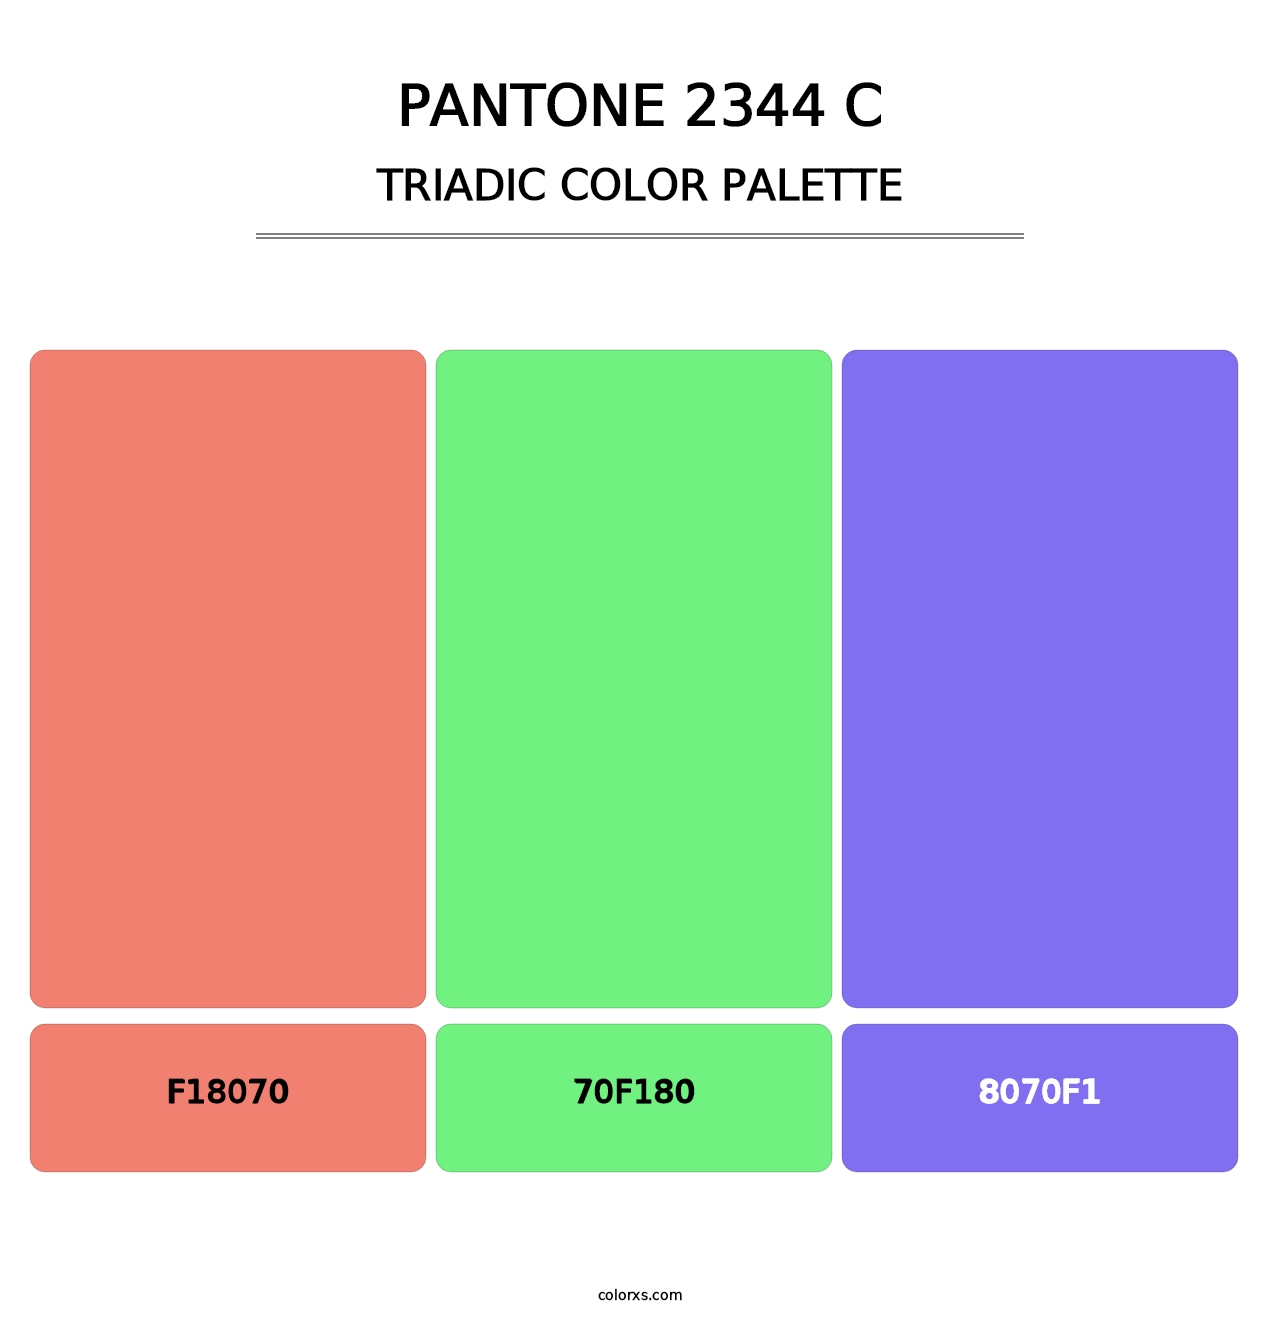 PANTONE 2344 C - Triadic Color Palette